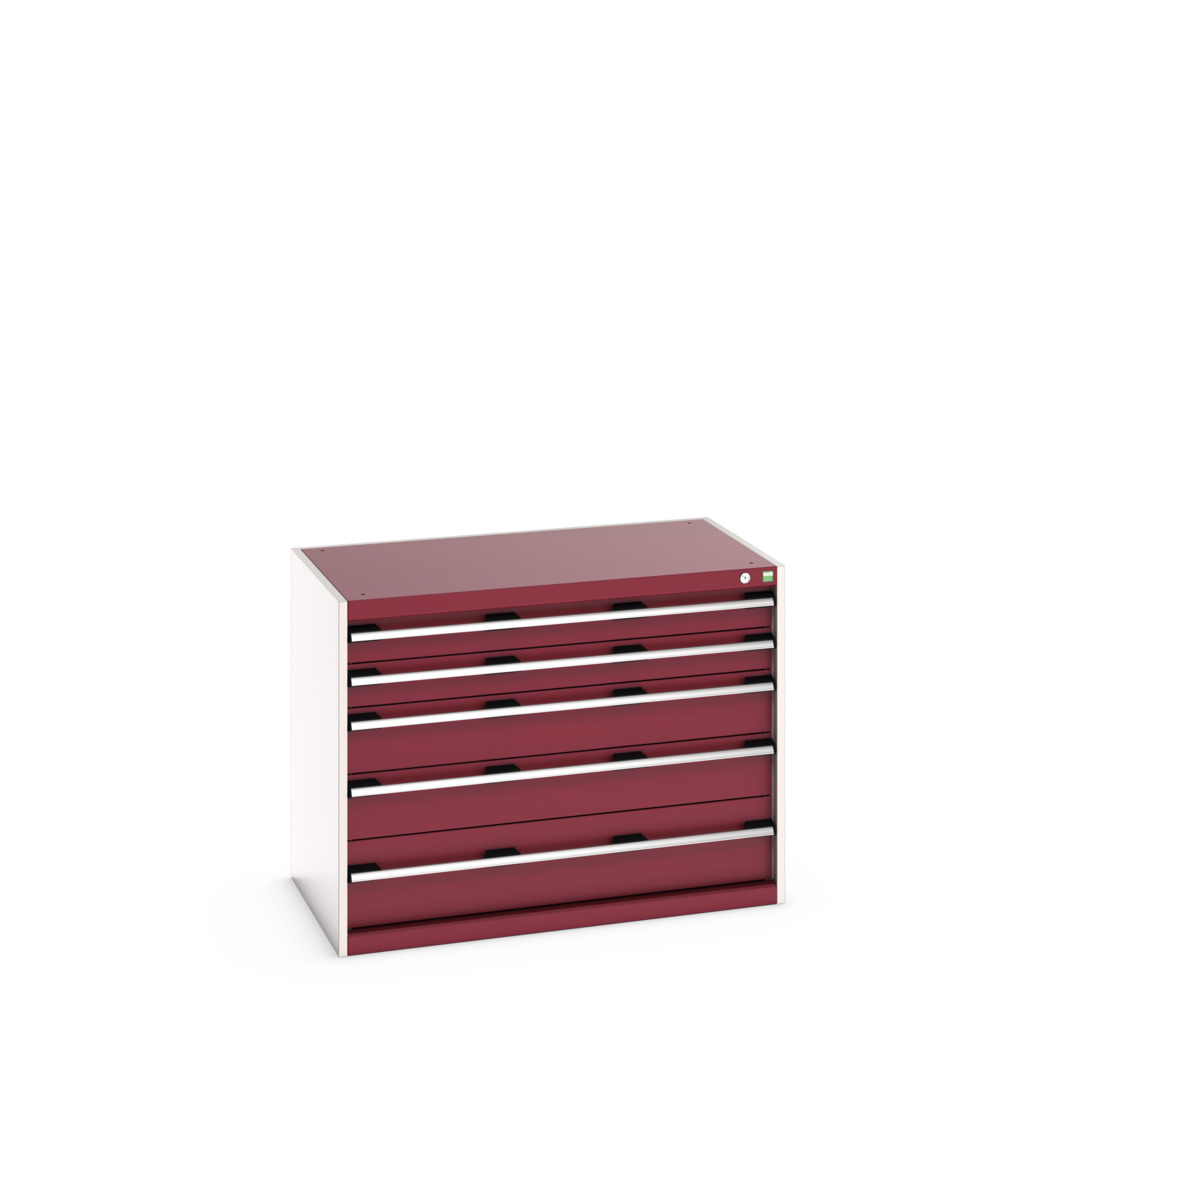 40021009.24V - cubio drawer cabinet